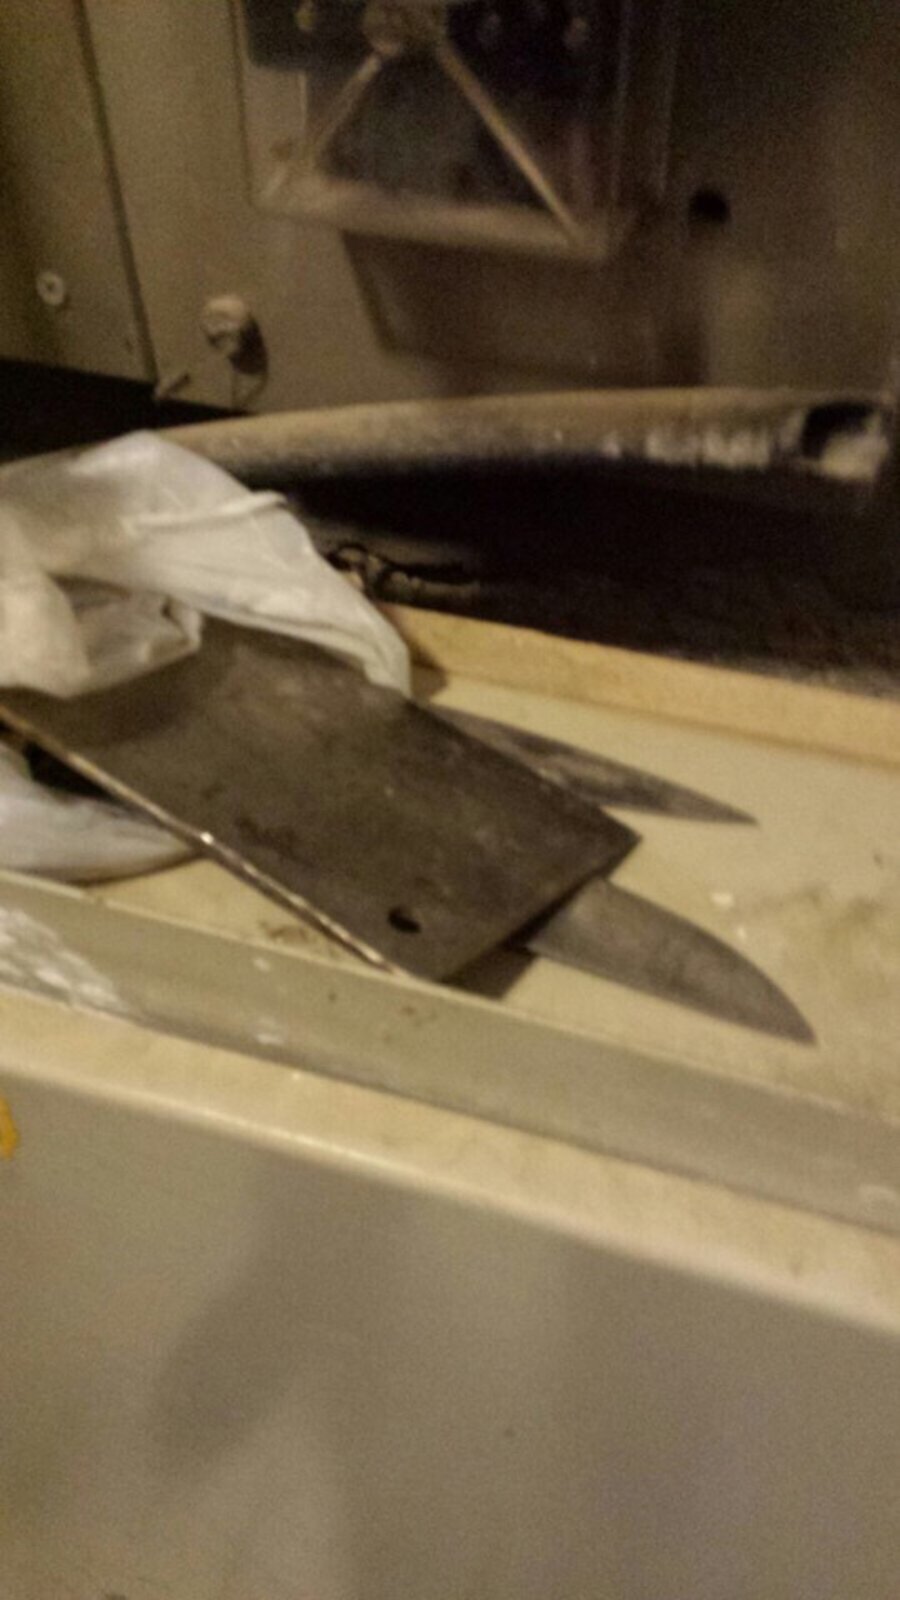 סכינים נמצאו מוסתרות באתר בנייה בהר נוף; המשטרה חוקרת